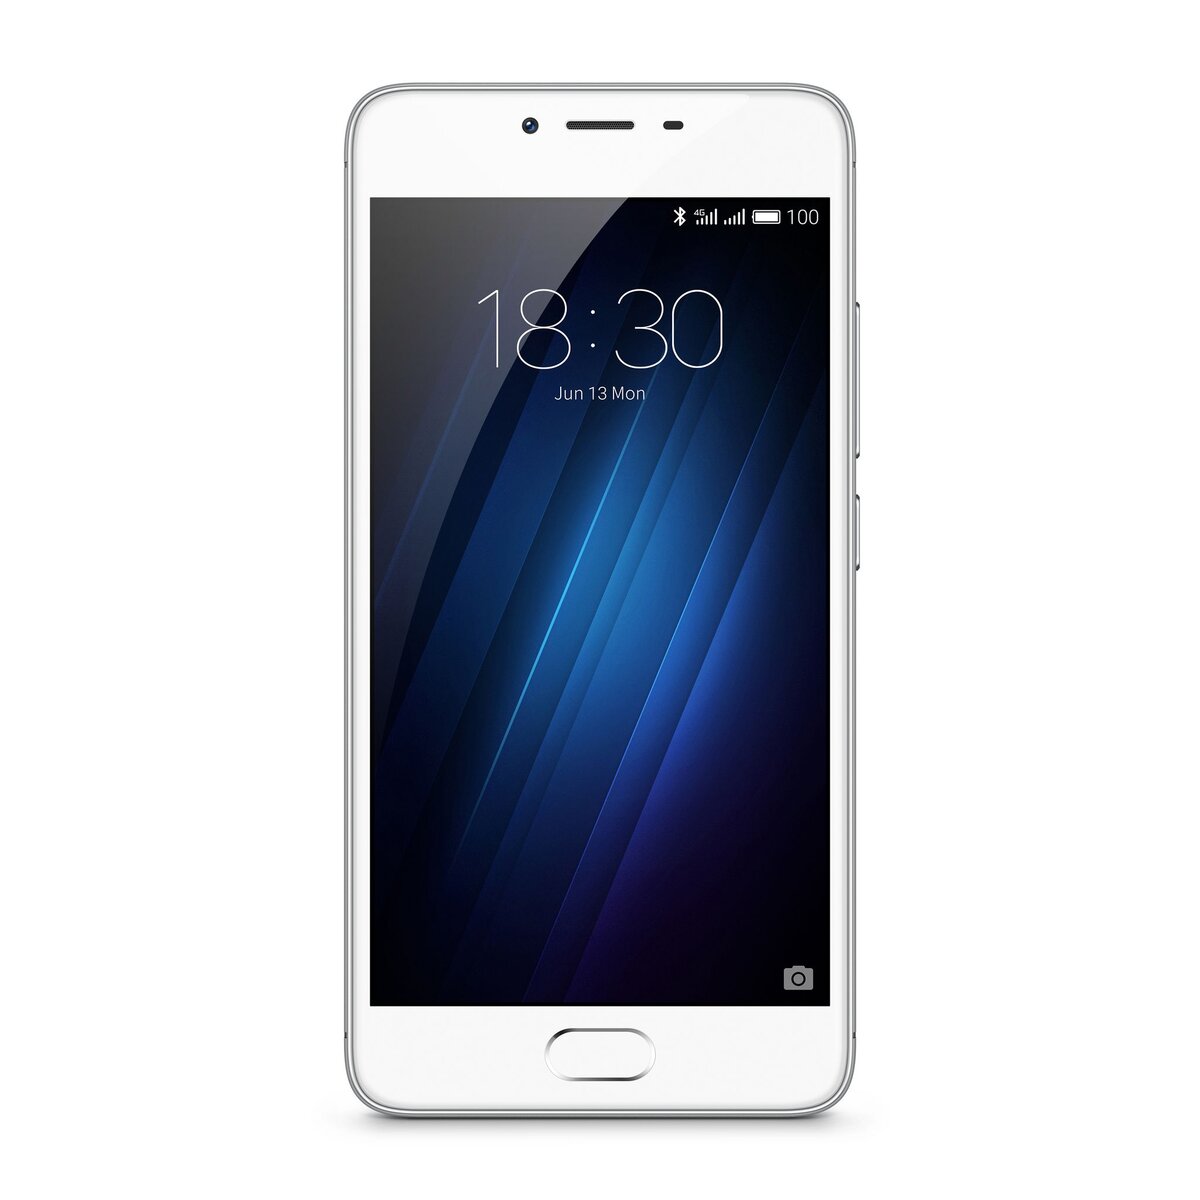 MEIZU Smartphone - M3S - Blanc et argent - Double sim